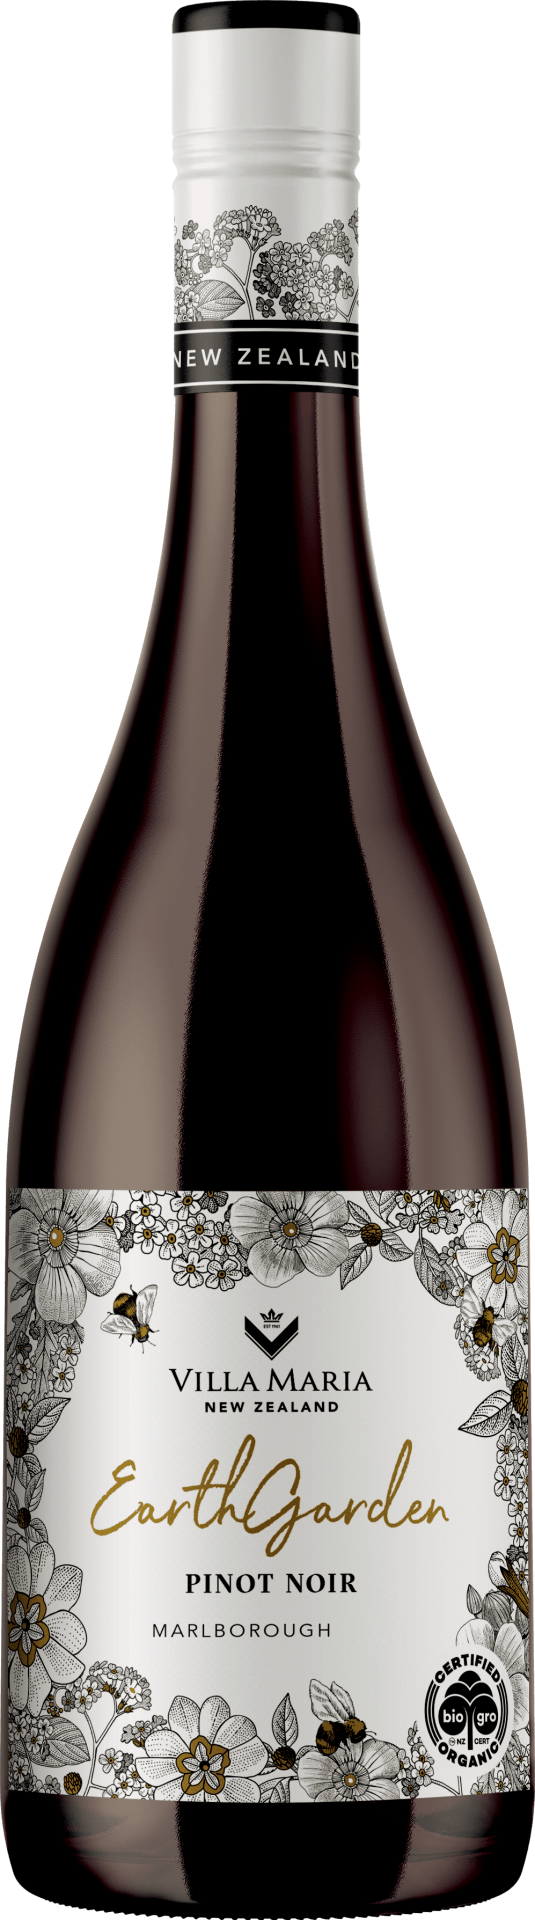 Earthgarden Pinot Noir